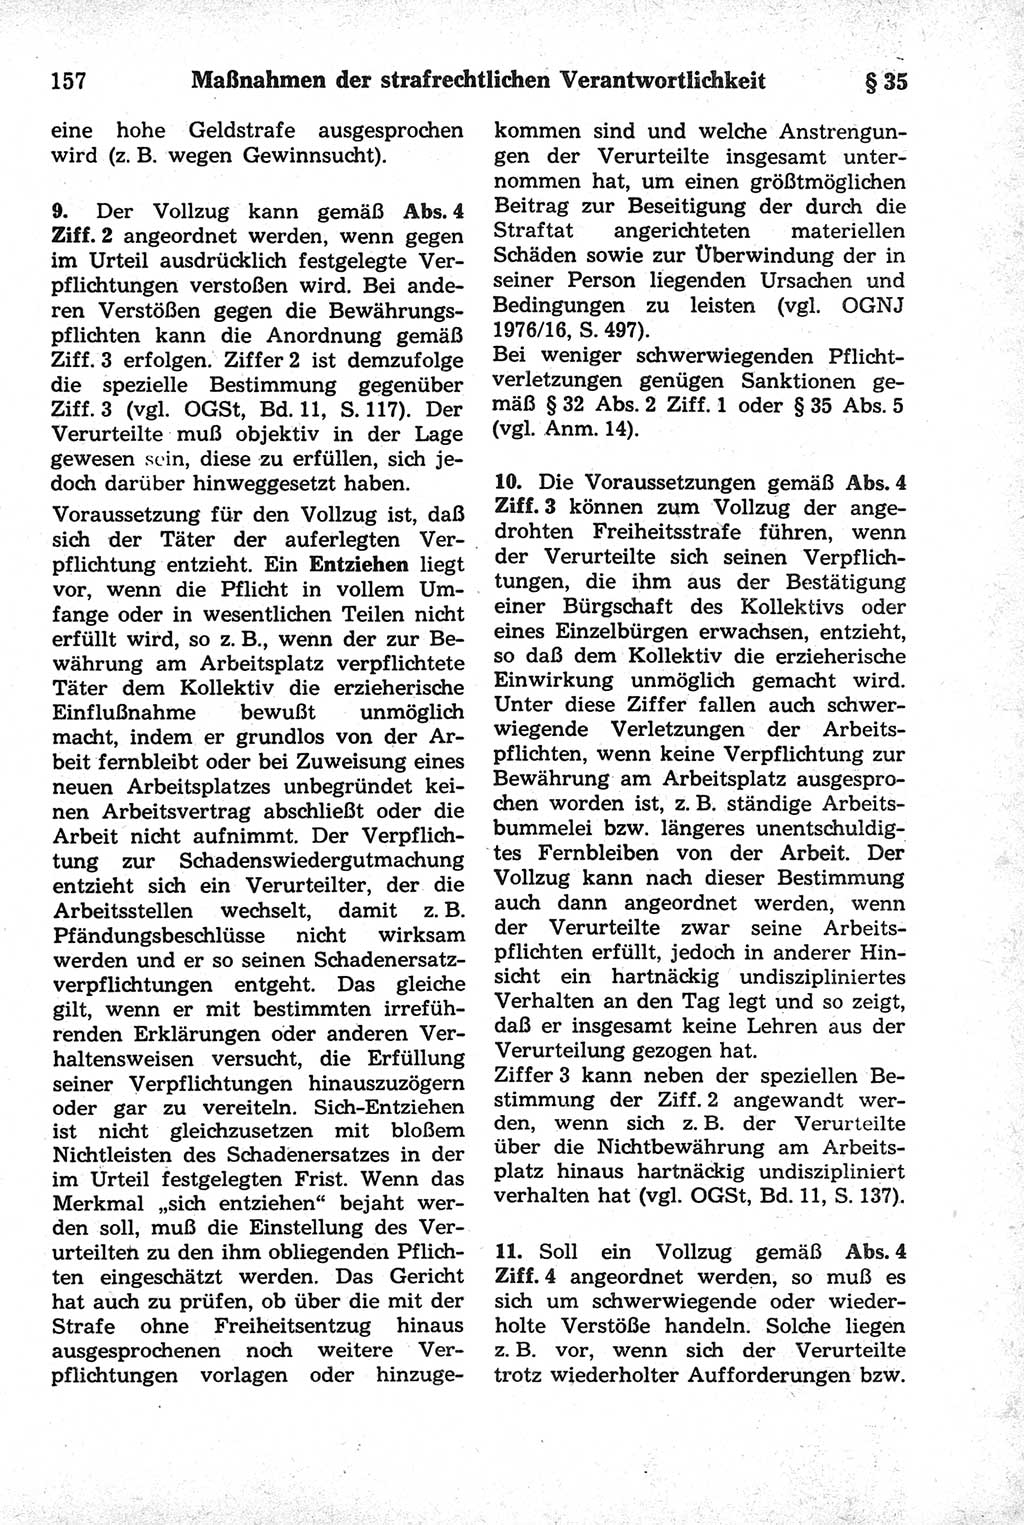 Strafrecht der Deutschen Demokratischen Republik (DDR), Kommentar zum Strafgesetzbuch (StGB) 1981, Seite 157 (Strafr. DDR Komm. StGB 1981, S. 157)